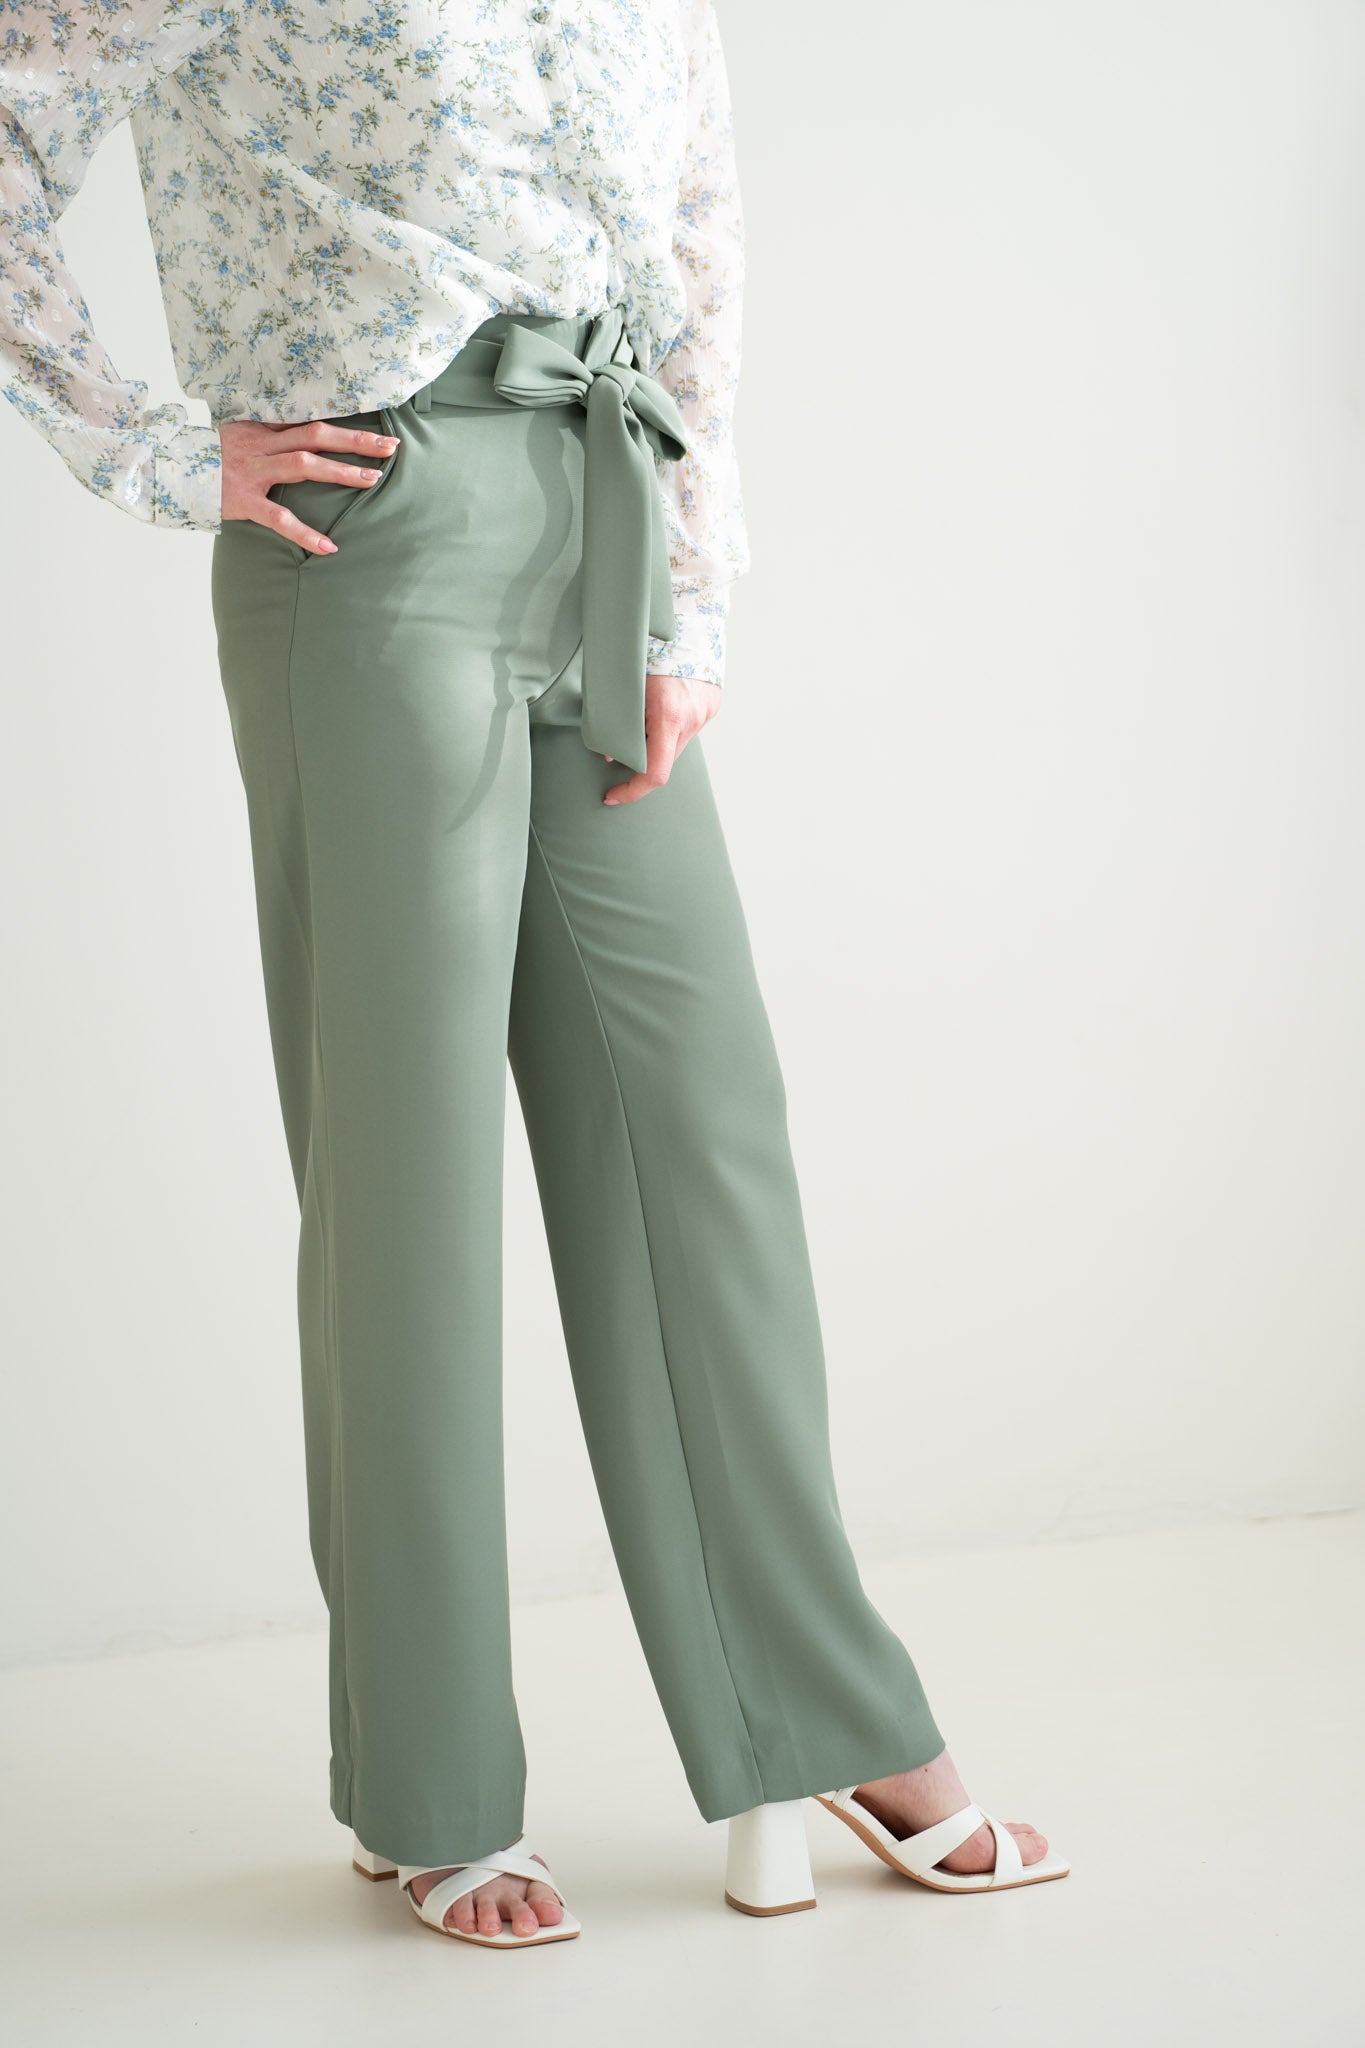 Green pants high waist - wide